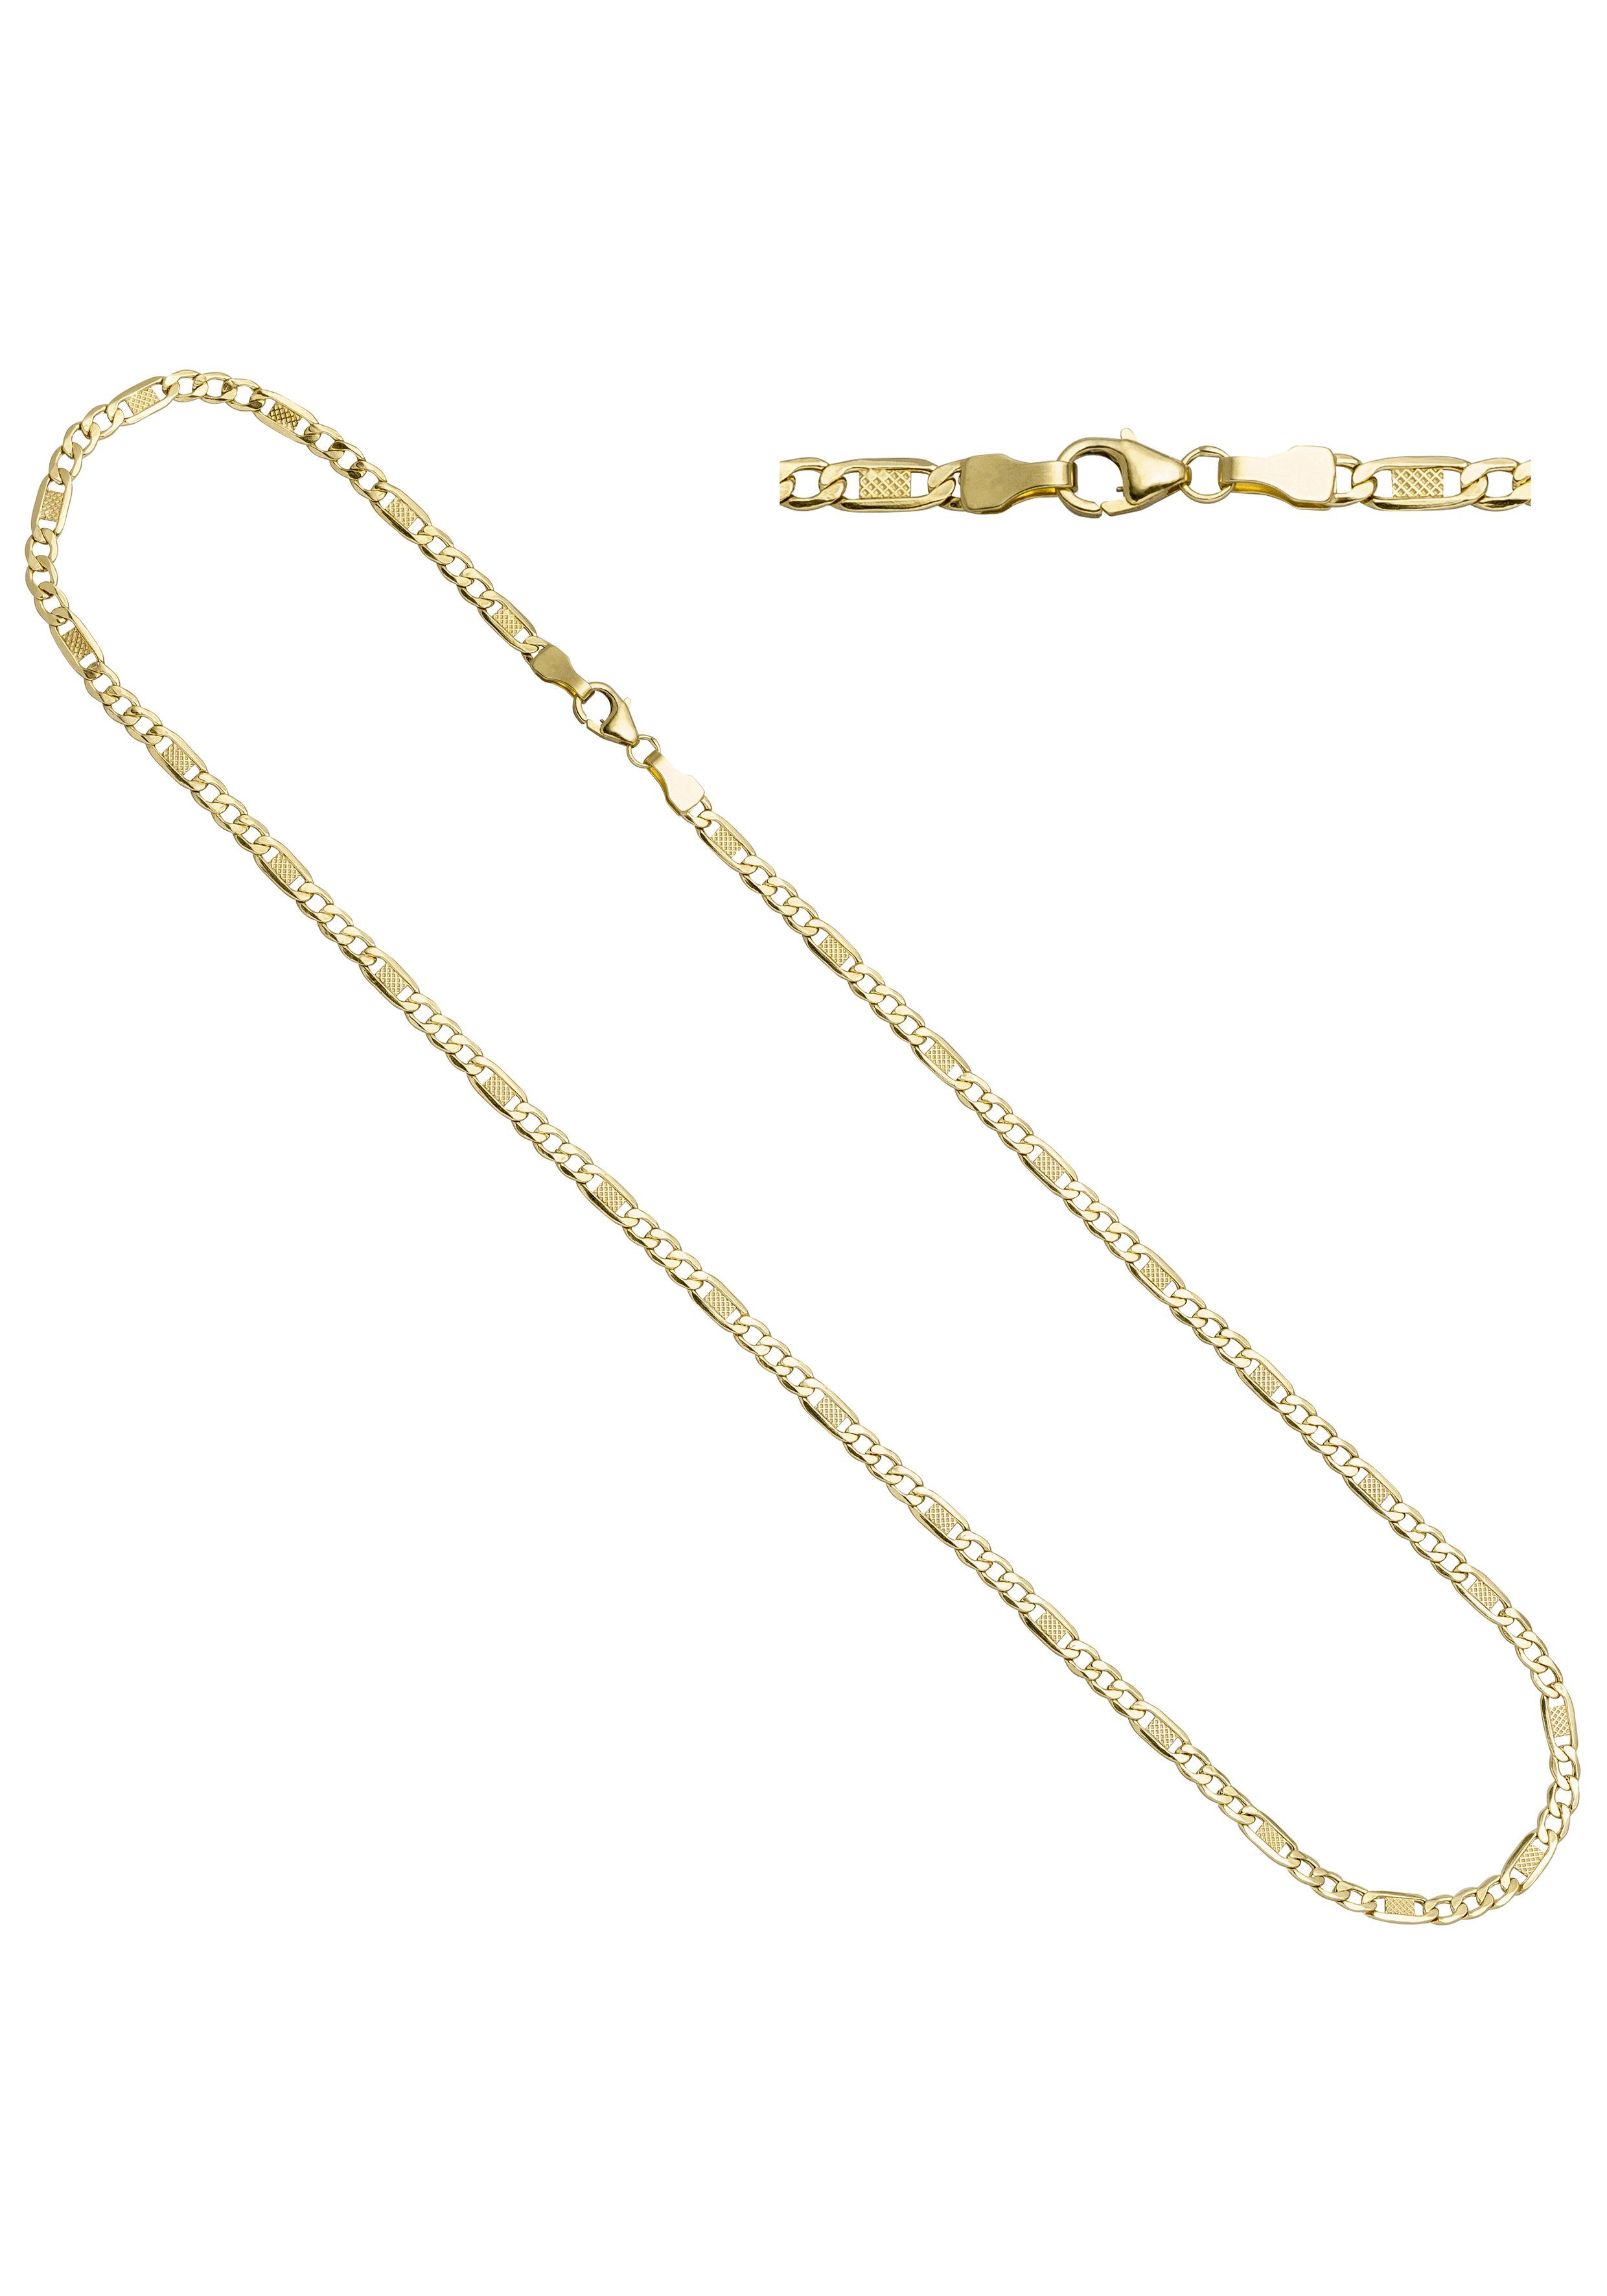 JOBO Goldkette, 333 Gold 45 cm, Hochwertige Halskette online kaufen | OTTO